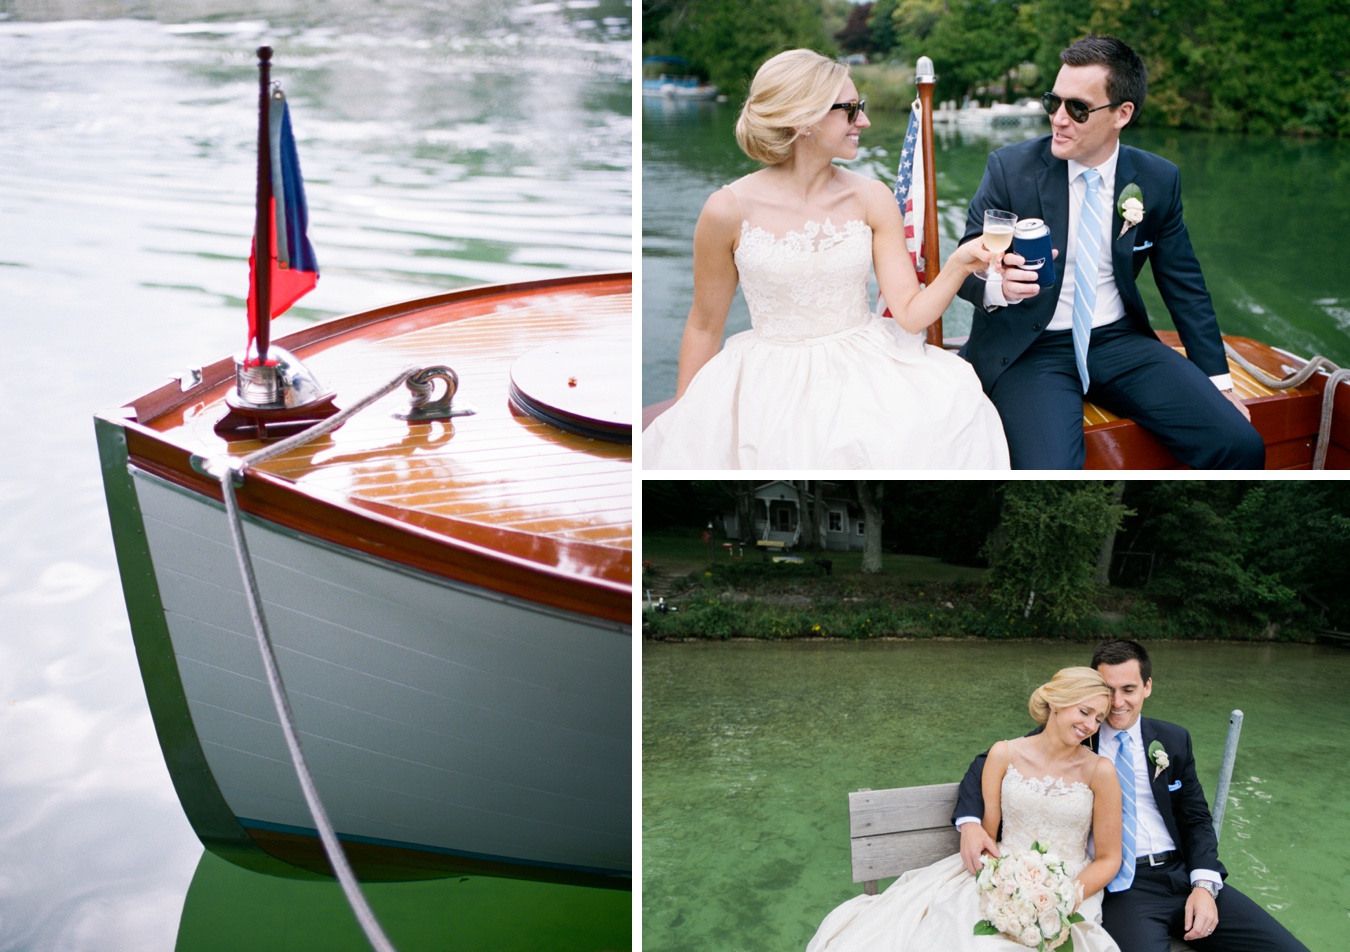 Lake Leelanau Wedding | Reception Entrance Ideas | Cory Weber Photography